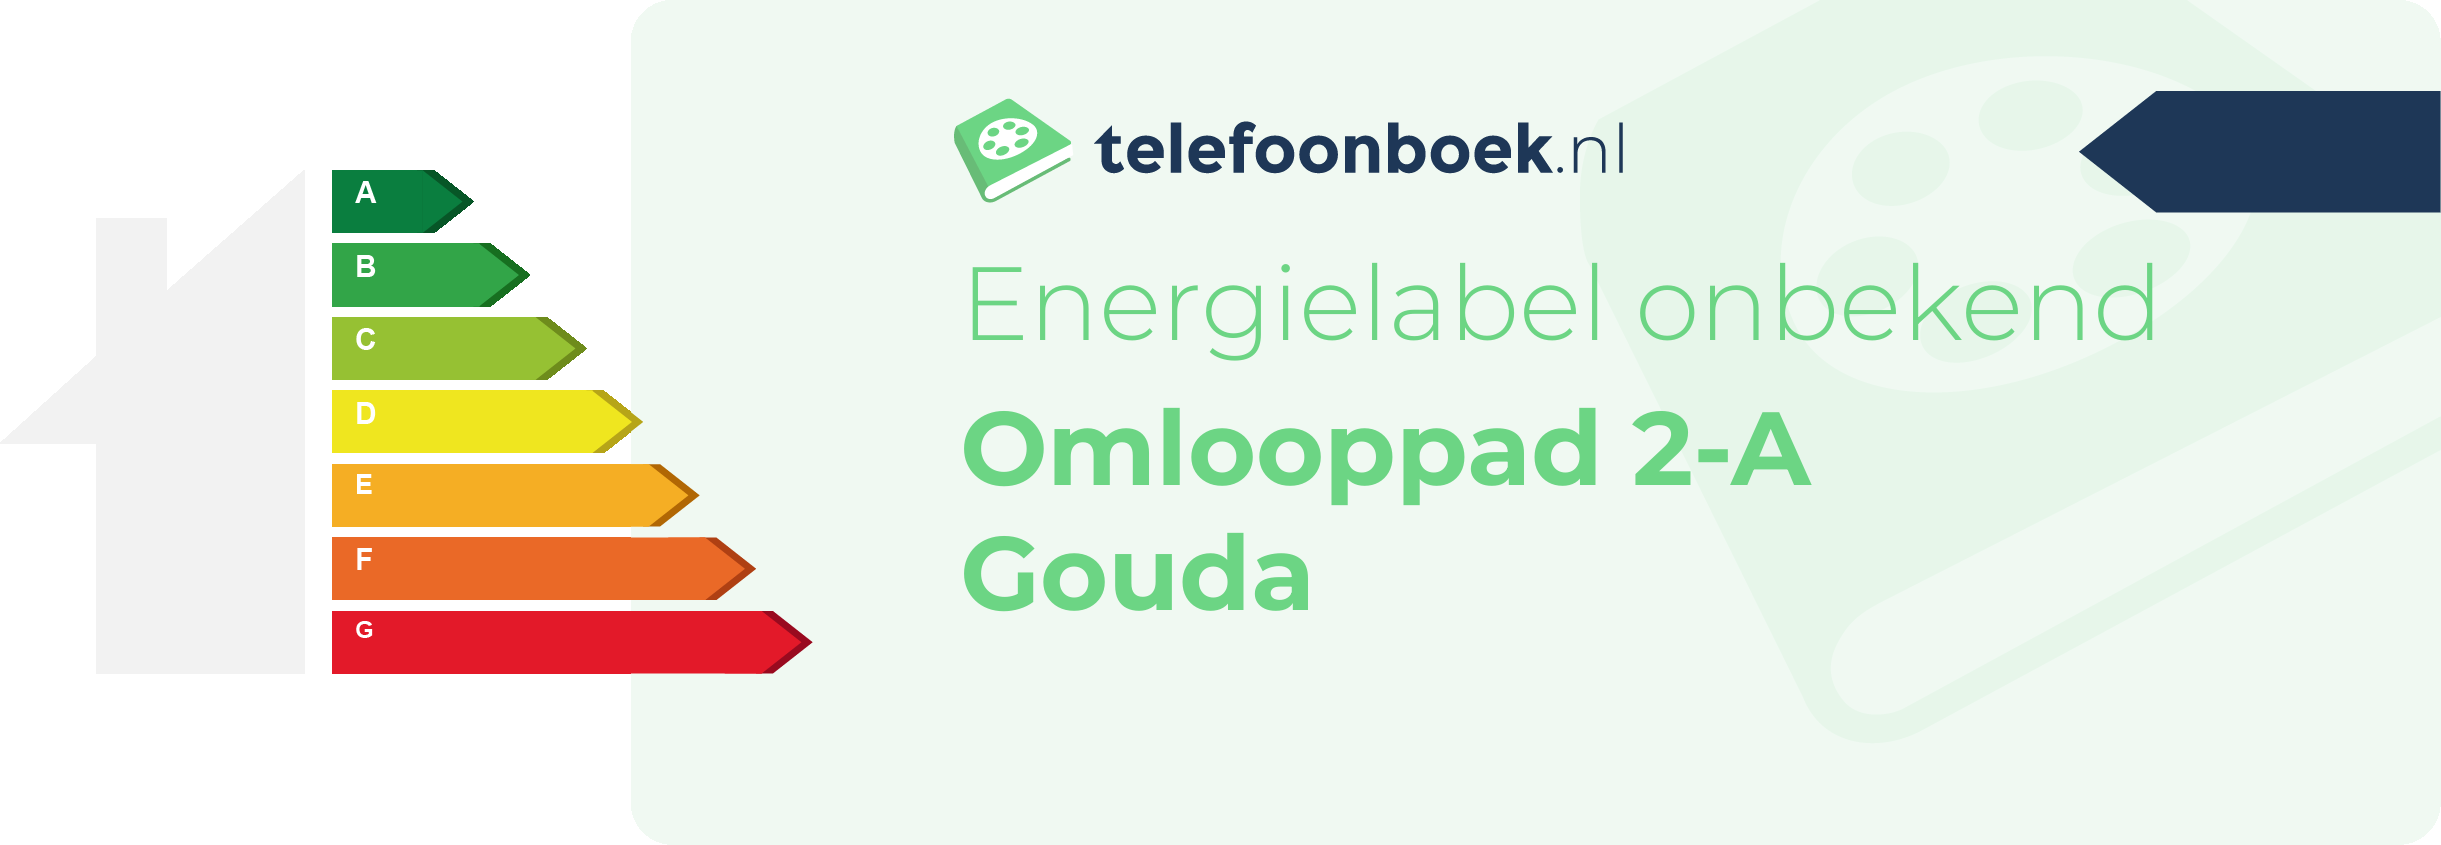 Energielabel Omlooppad 2-A Gouda